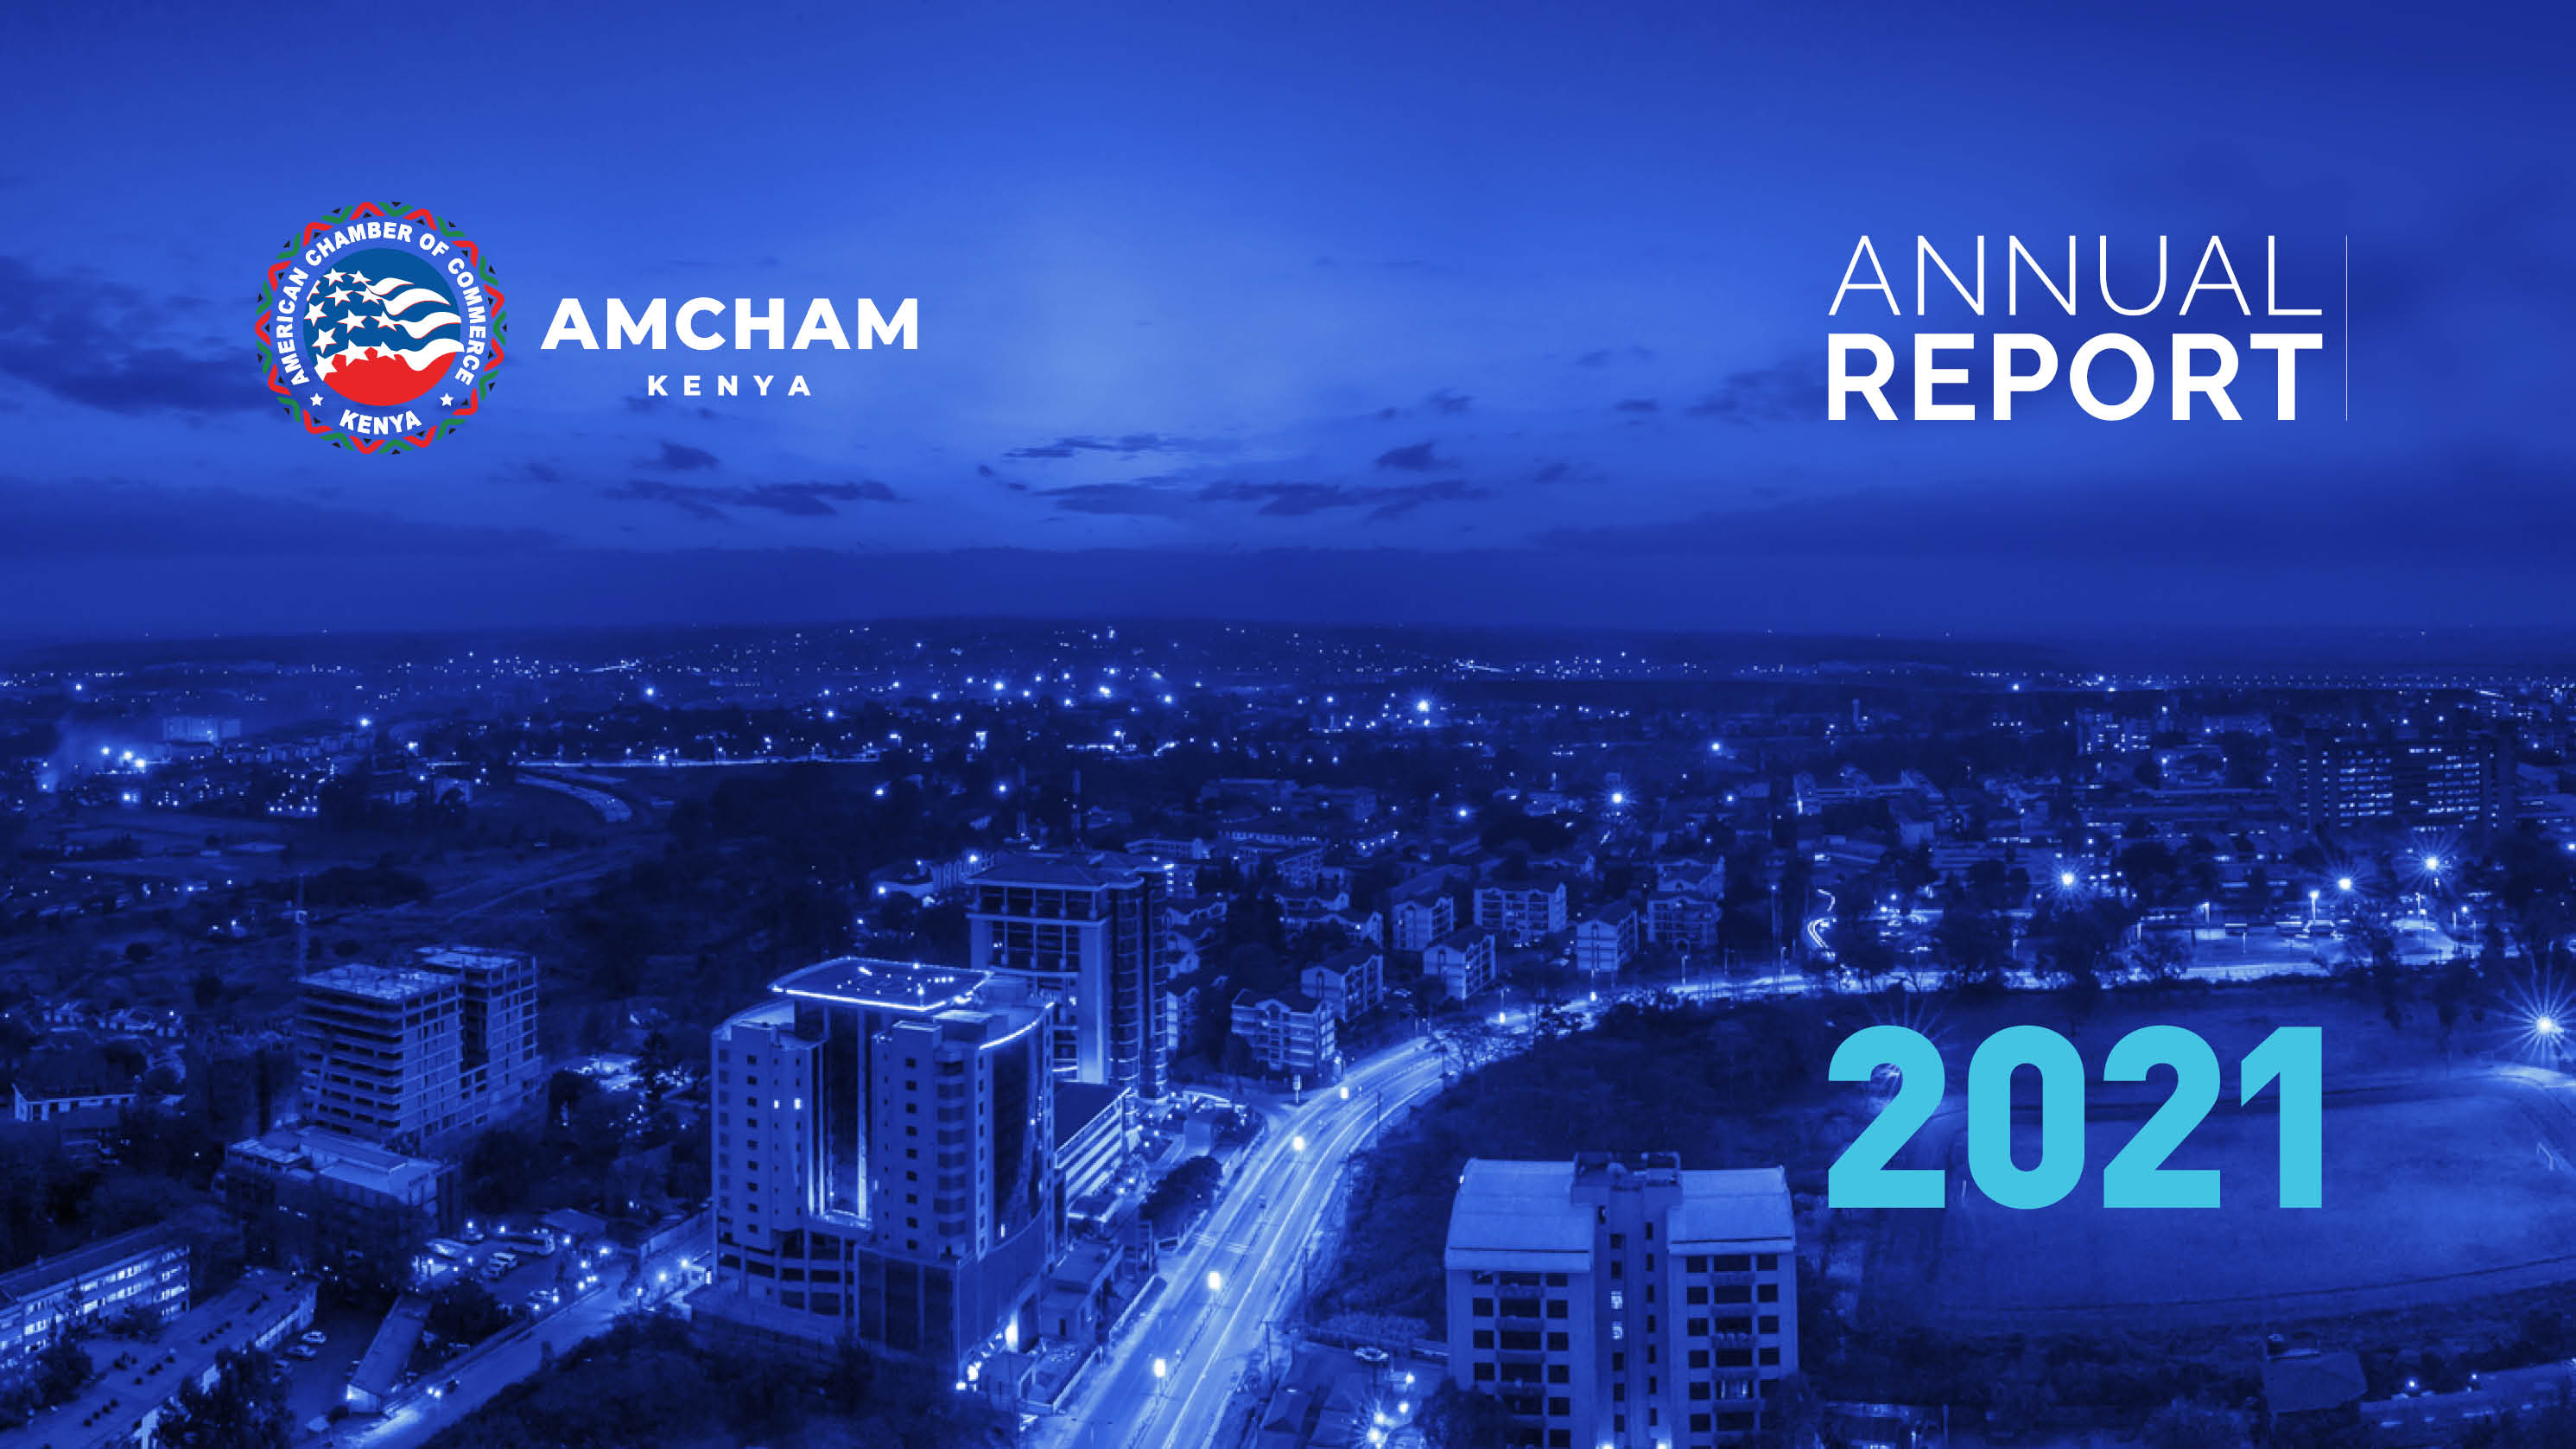 AmCham Annual Report 2021